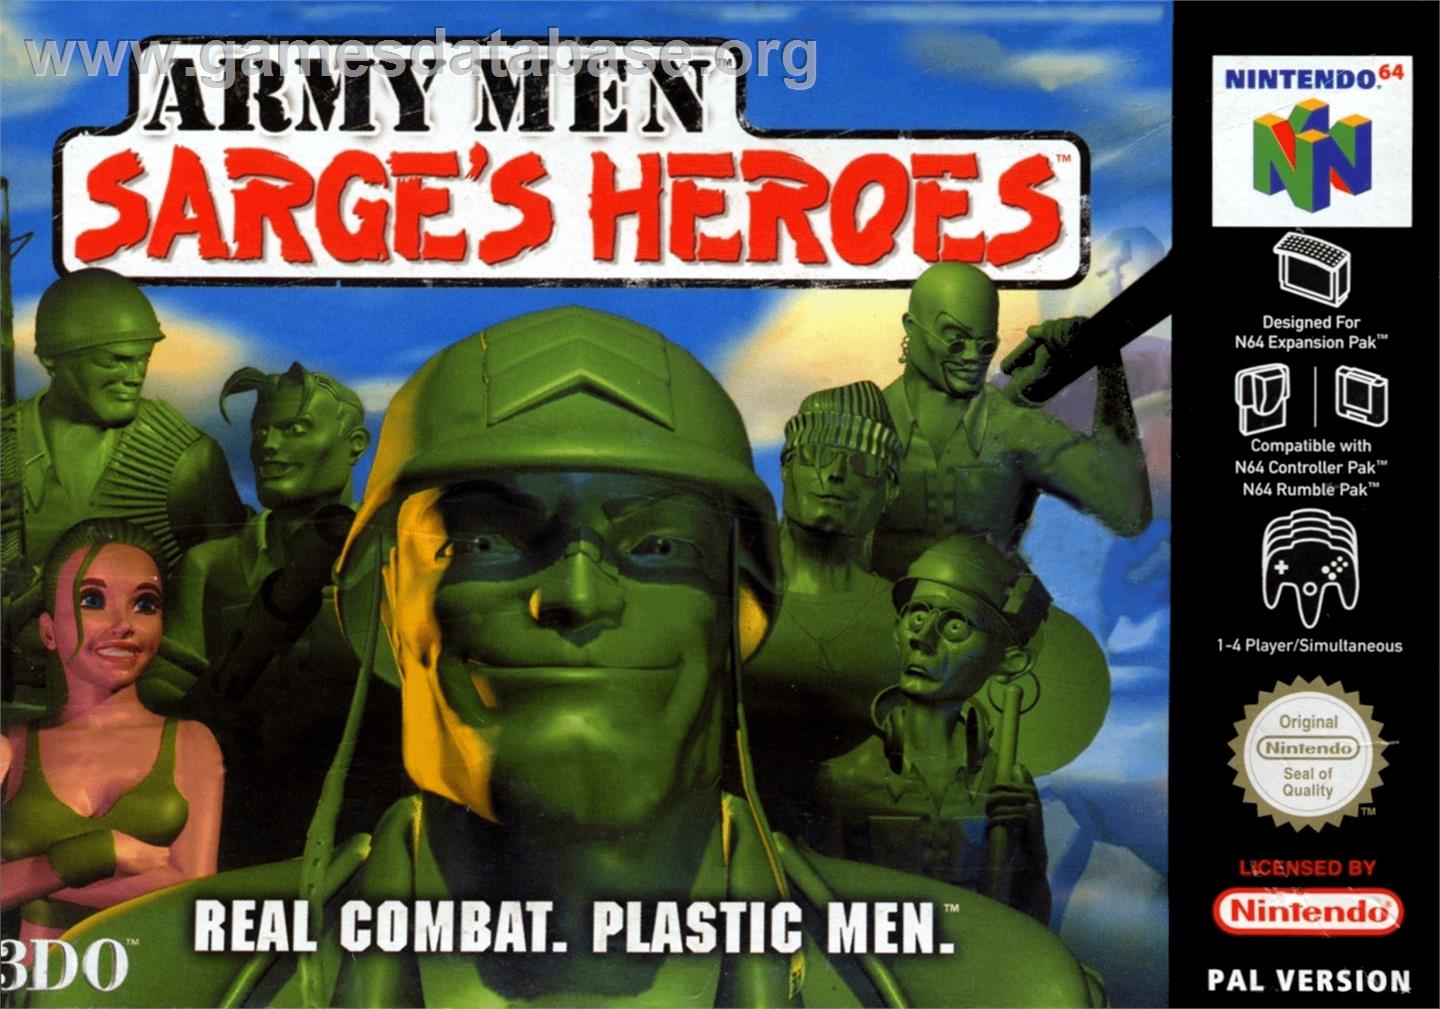 Army Men: Sarge's Heroes - Nintendo N64 - Artwork - Box